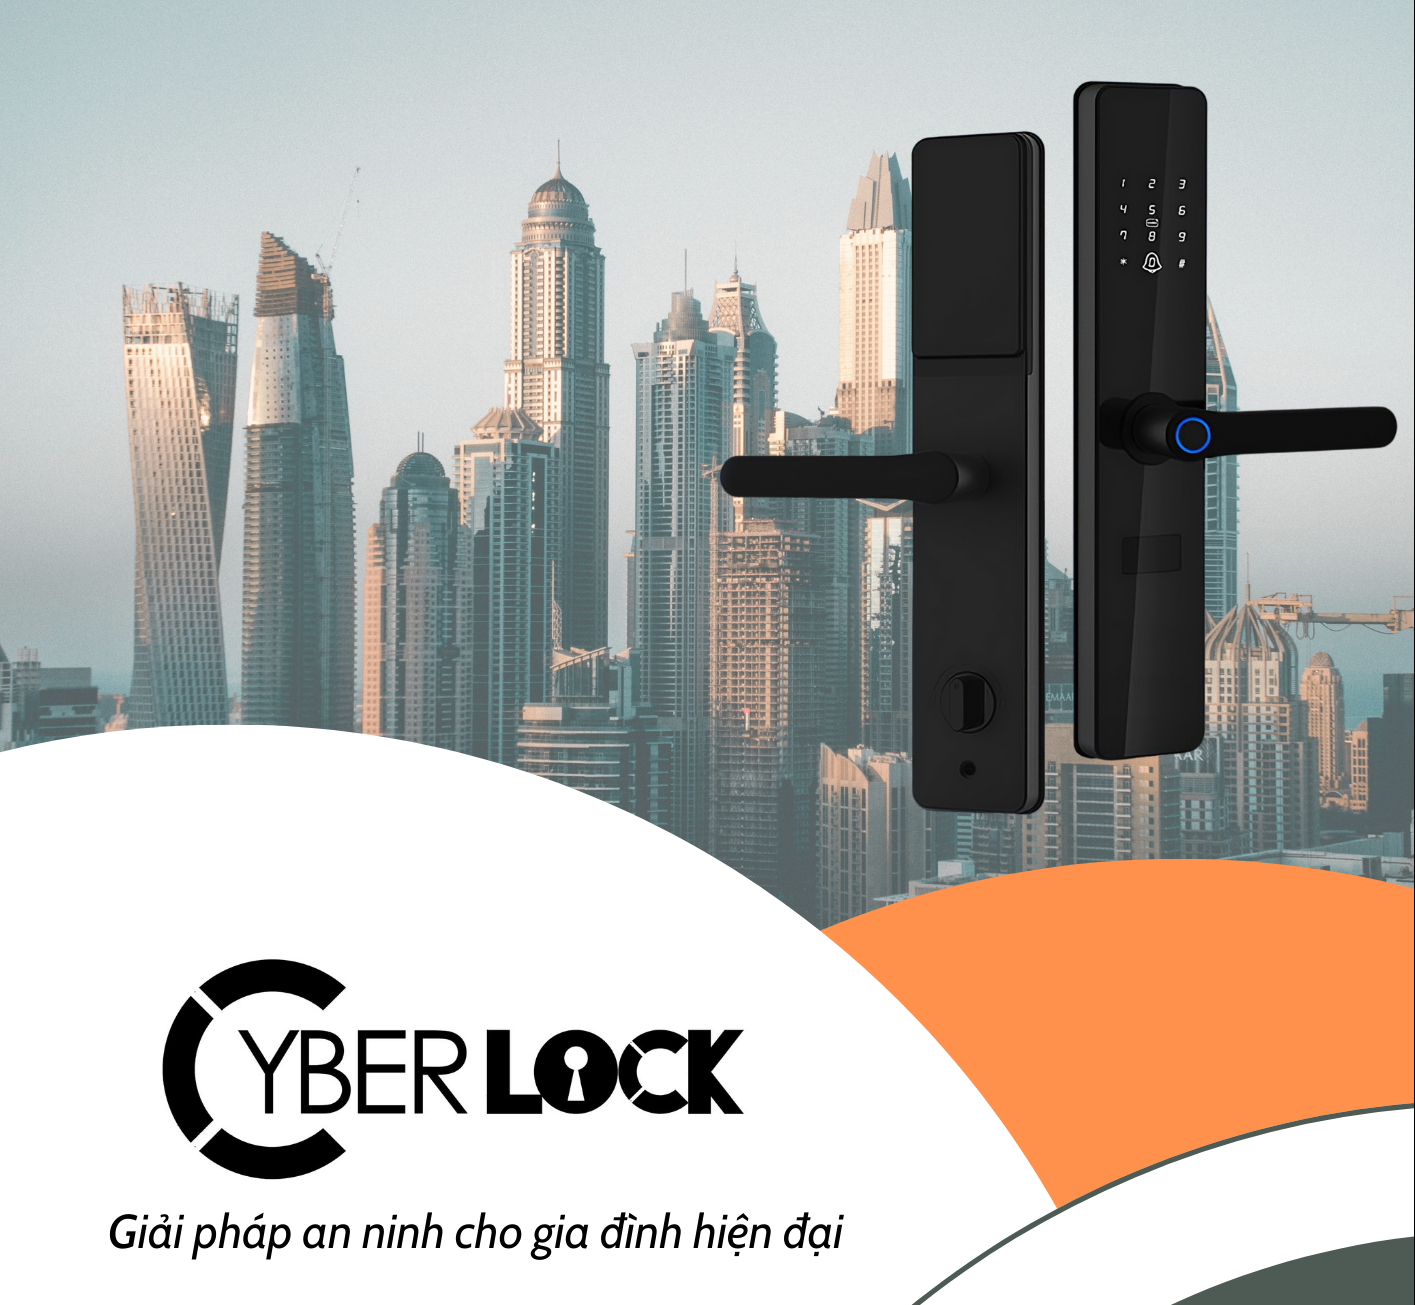 Cyberlock - Thương hiệu khóa thông minh đạt tiêu chuẩn châu Âu